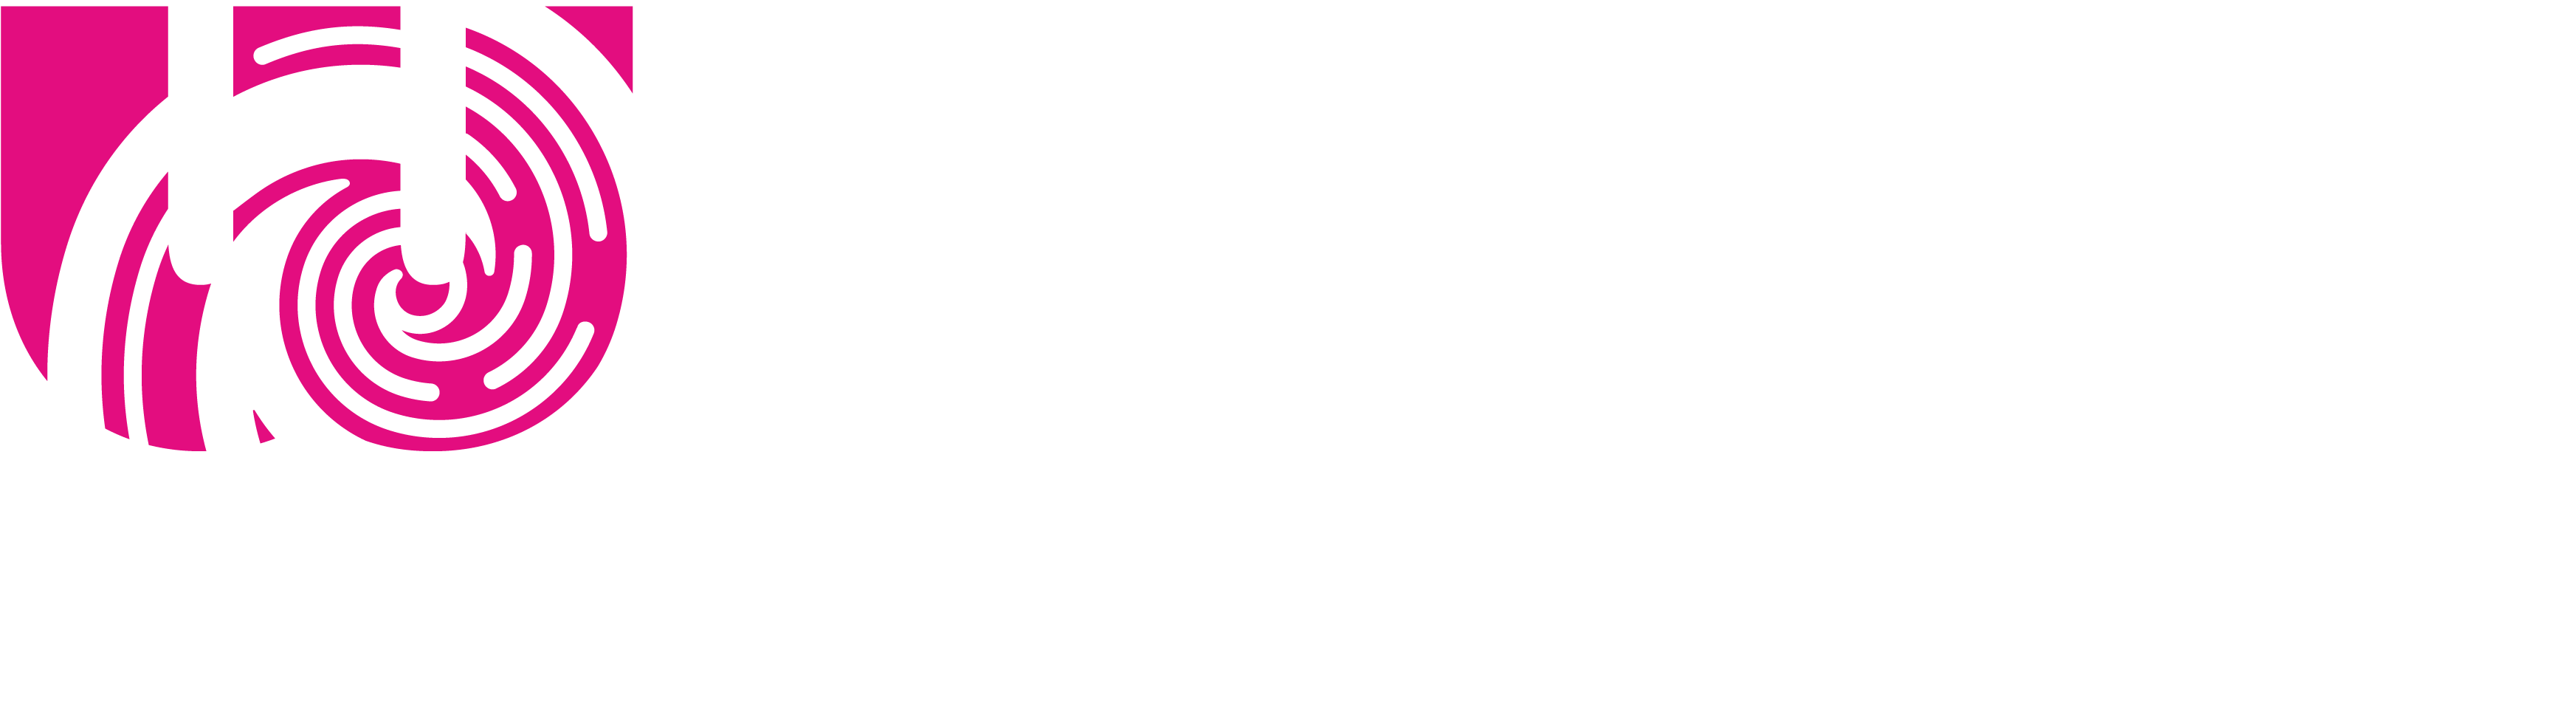 City Fibre co brand Logo